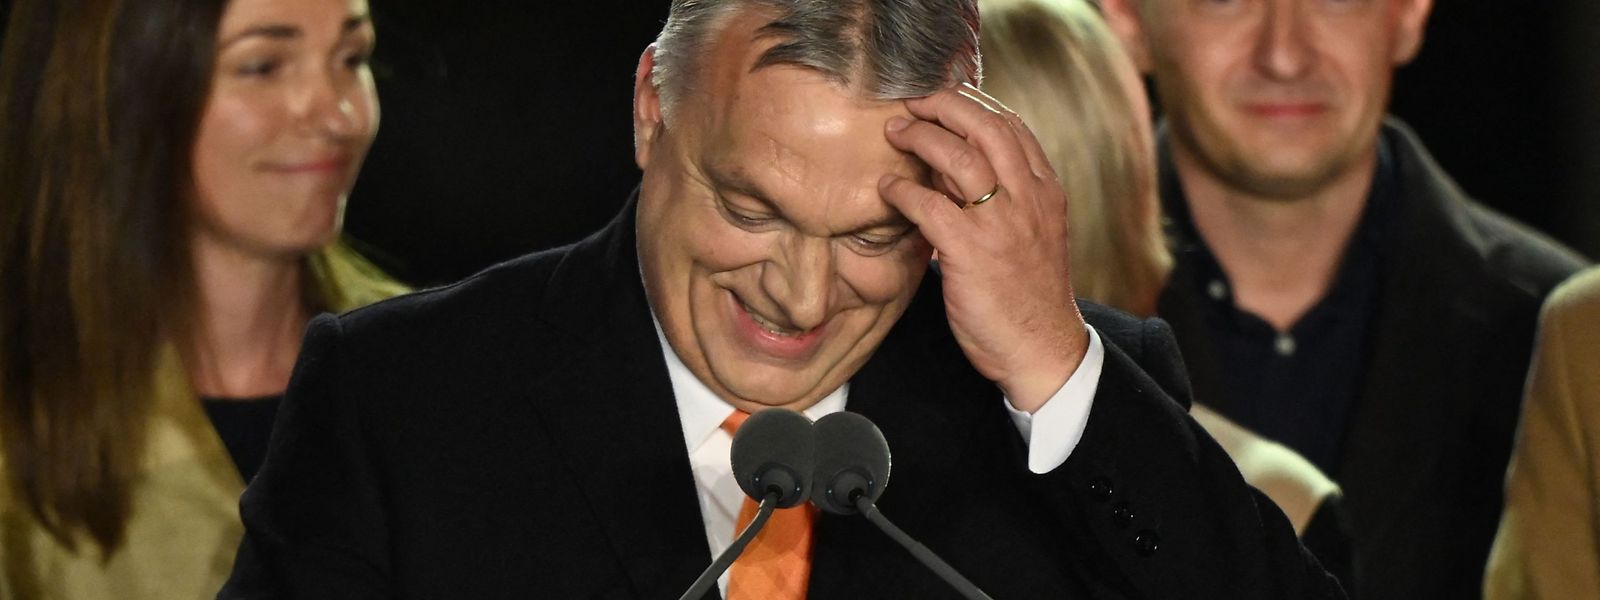 Der seit 2010 die Regierung anführende Viktor Orbán führt sein Land zunehmend Richtung Autokratie. 